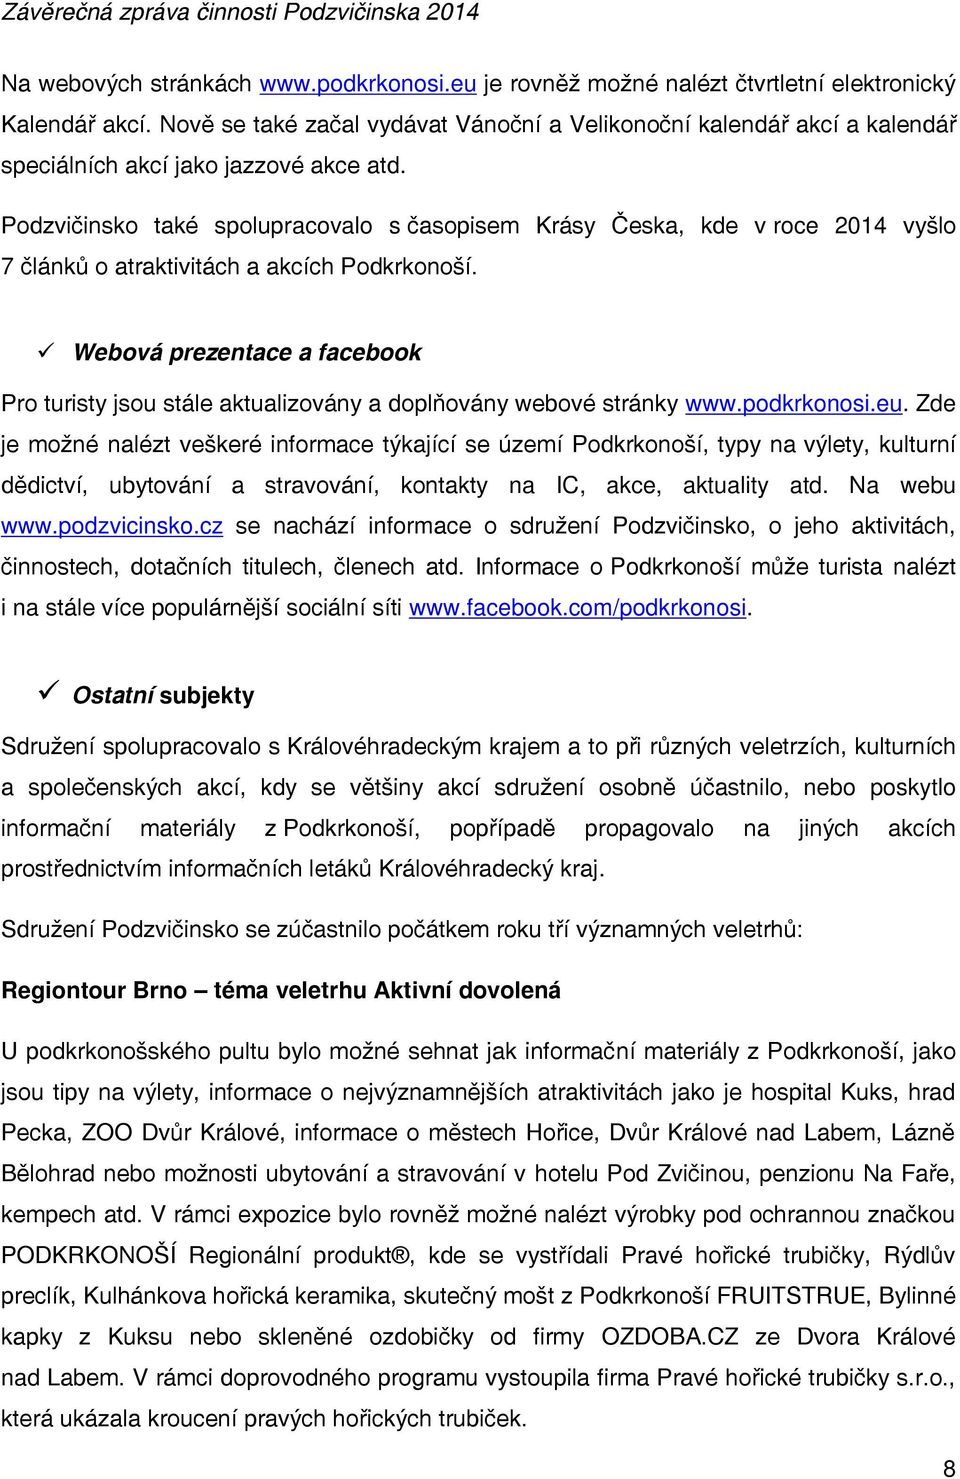 Podzvičinsko také spolupracovalo s časopisem Krásy Česka, kde v roce 2014 vyšlo 7 článků o atraktivitách a akcích Podkrkonoší.